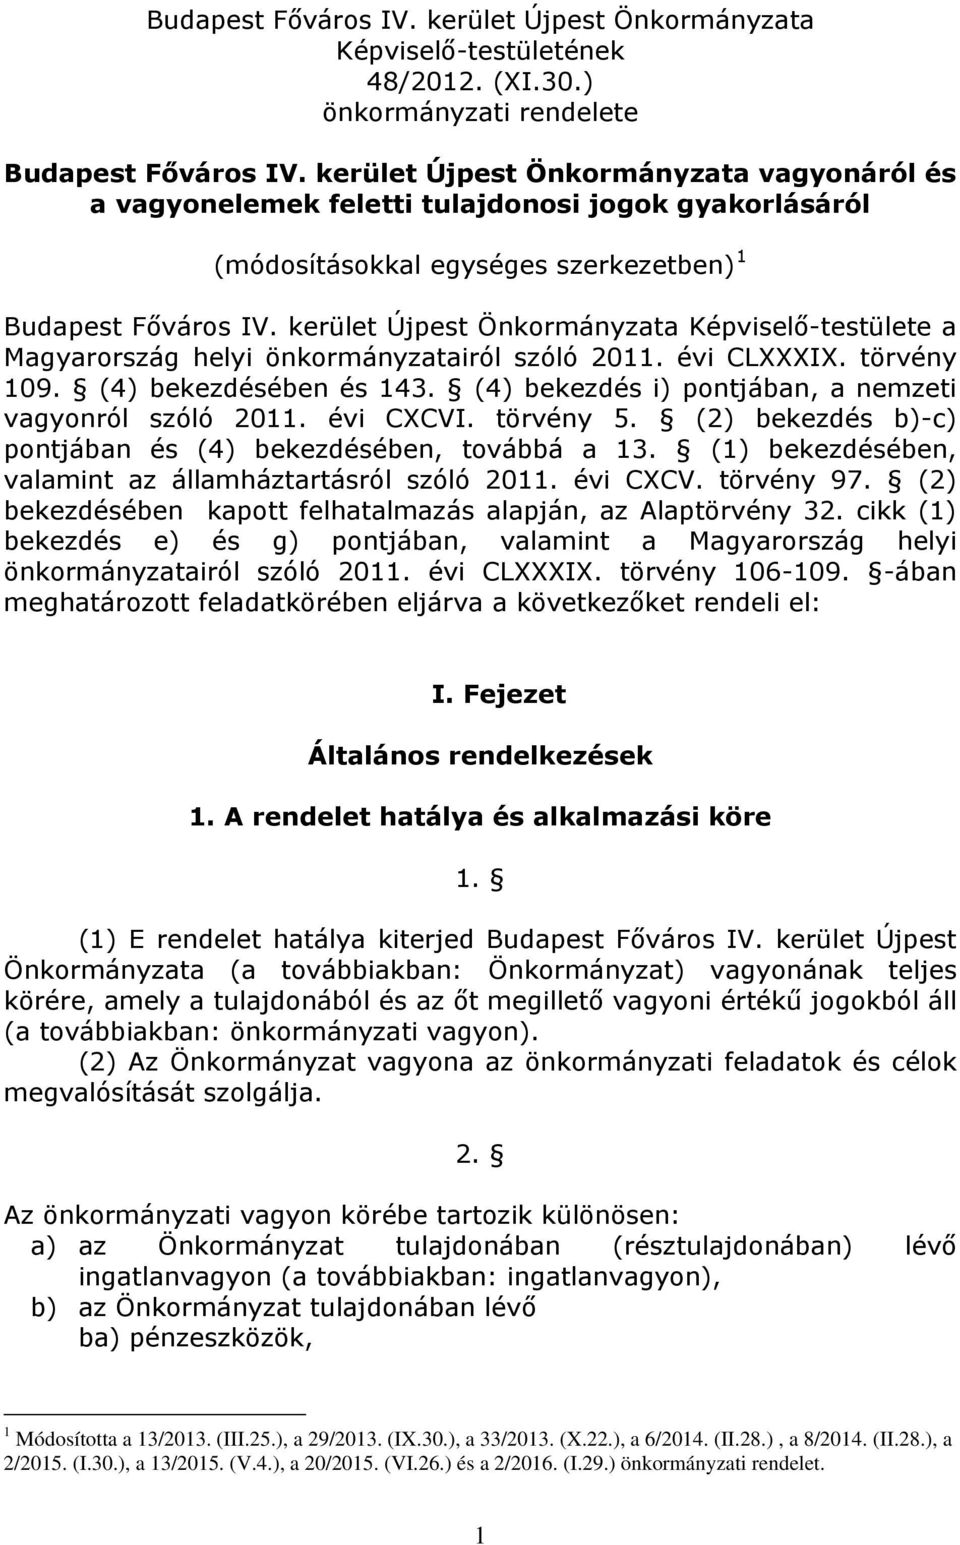 kerület Újpest Önkormányzata Képviselő-testülete a Magyarország helyi önkormányzatairól szóló 2011. évi CLXXXIX. törvény 109. (4) bekezdésében és 143.